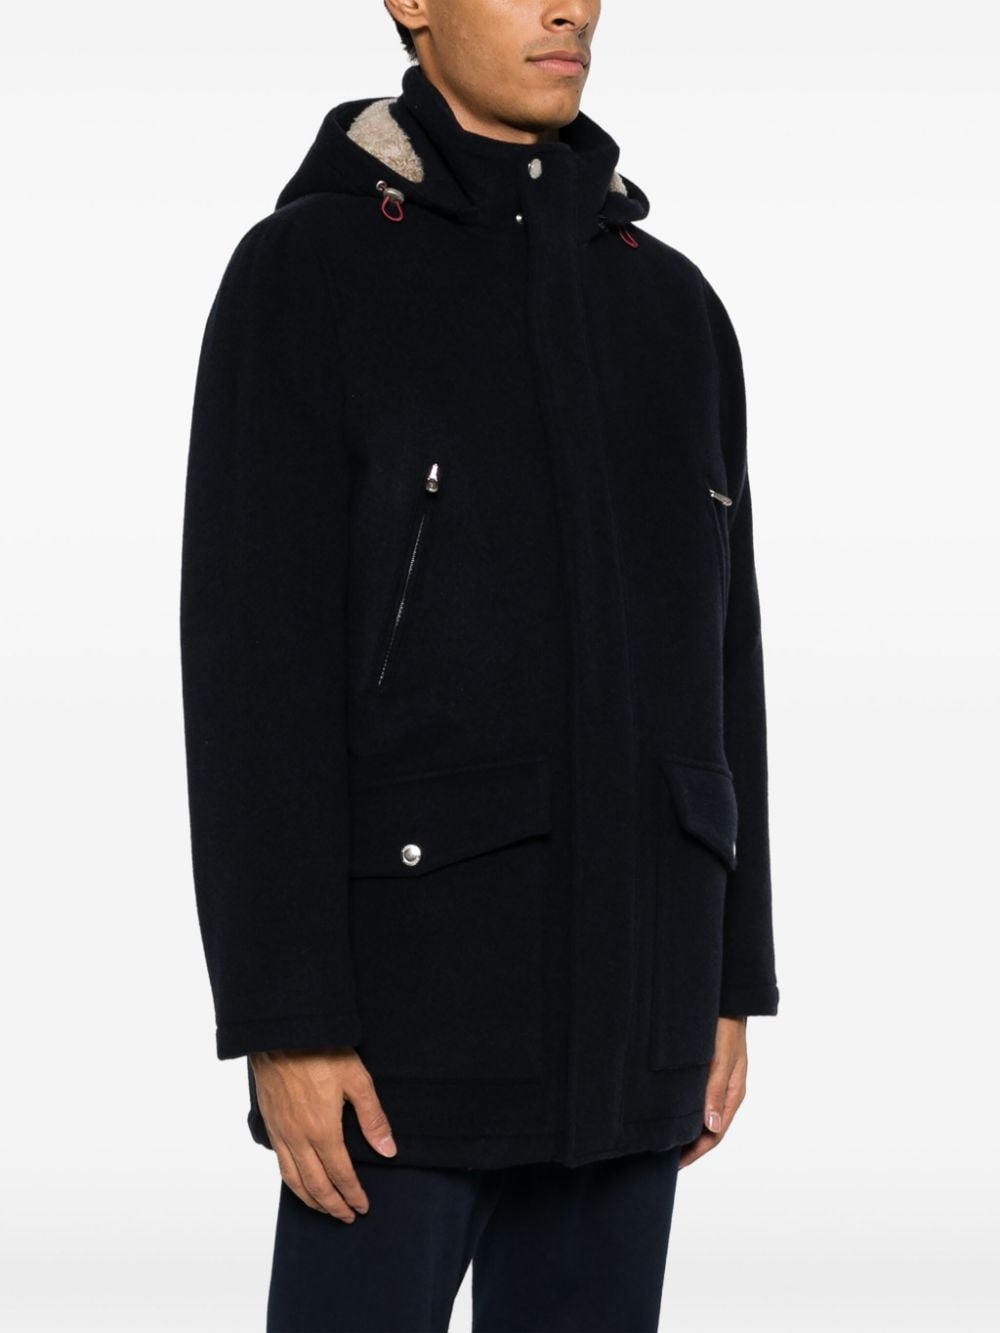 cashmere hooded parka jacket - 3